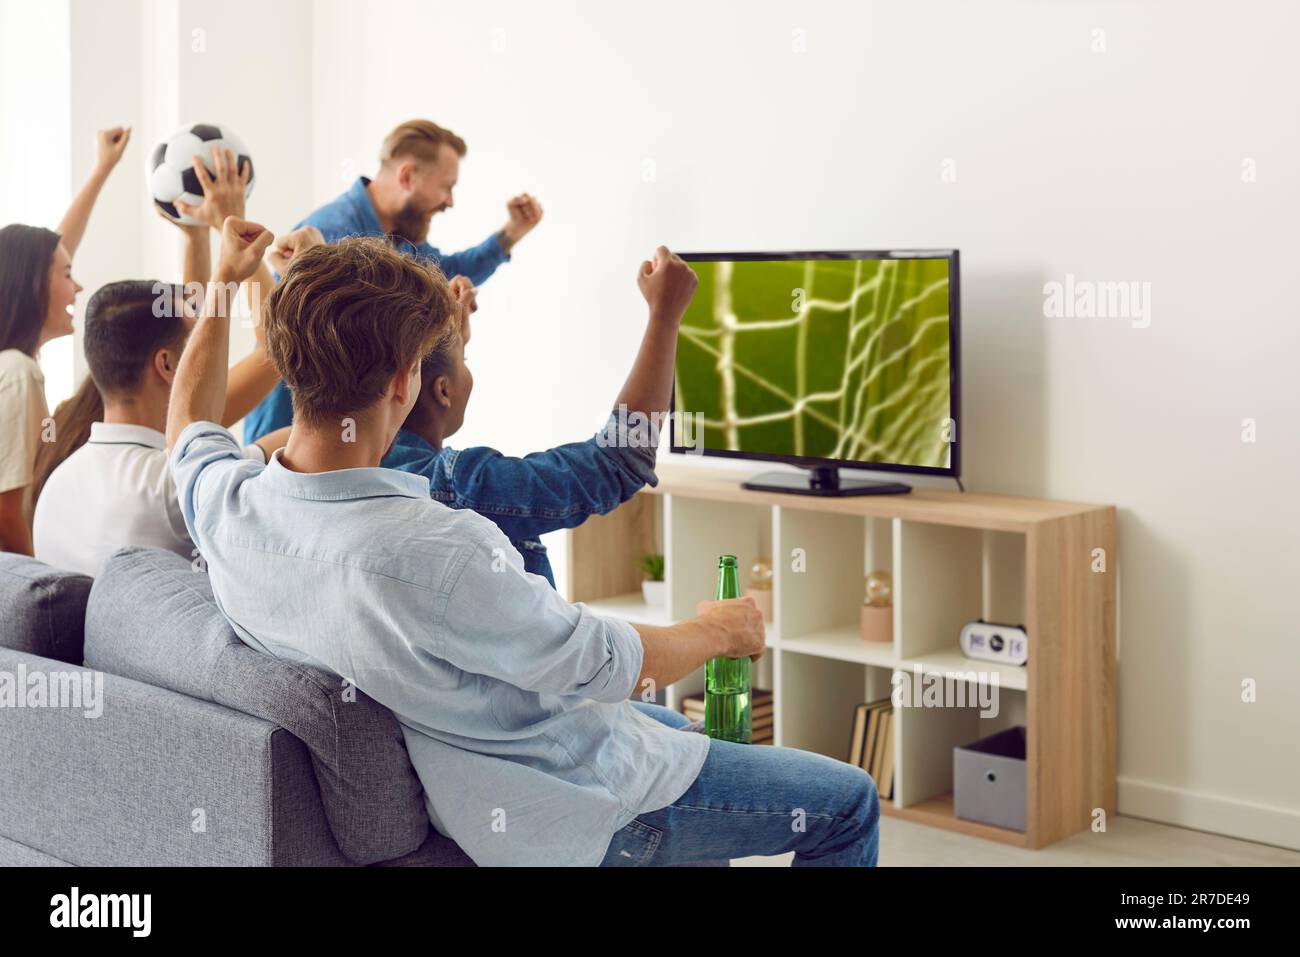 Groupe de jeunes amis heureux et enthousiastes regardant un match de football à la télévision à la maison Banque D'Images